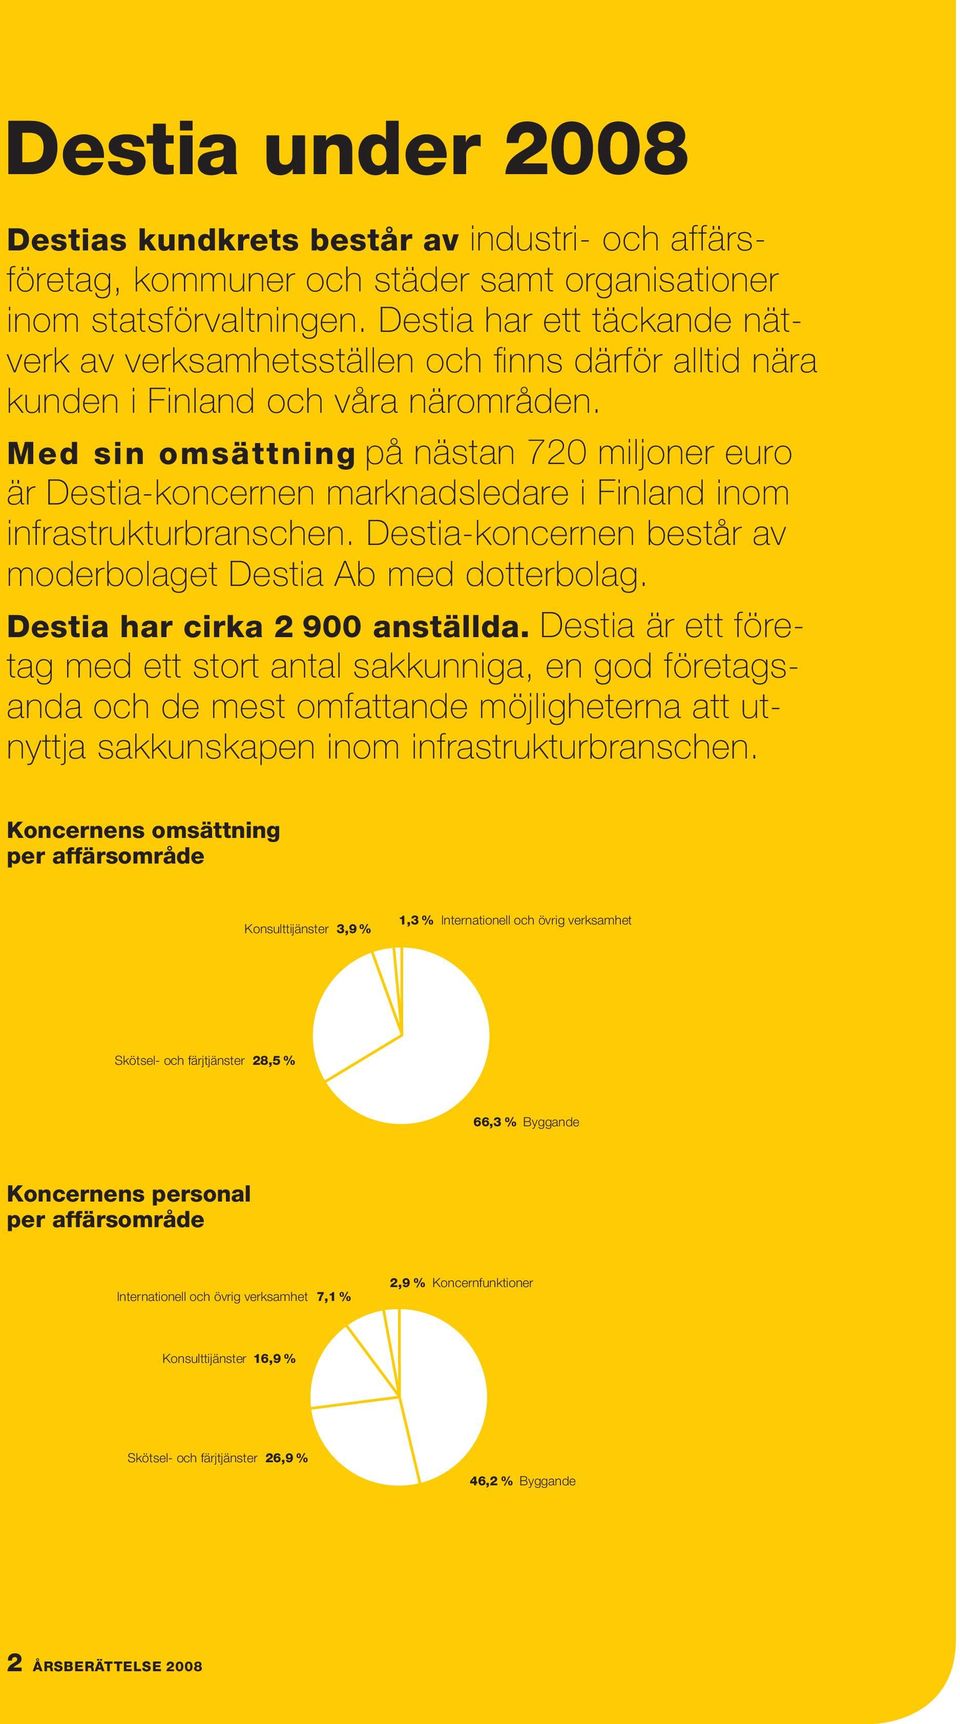 Med sin omsättning på nästan 720 miljoner euro är Destia-koncernen marknadsledare i Finland inom infrastrukturbranschen. Destia-koncernen består av moderbolaget Destia Ab med dotterbolag.